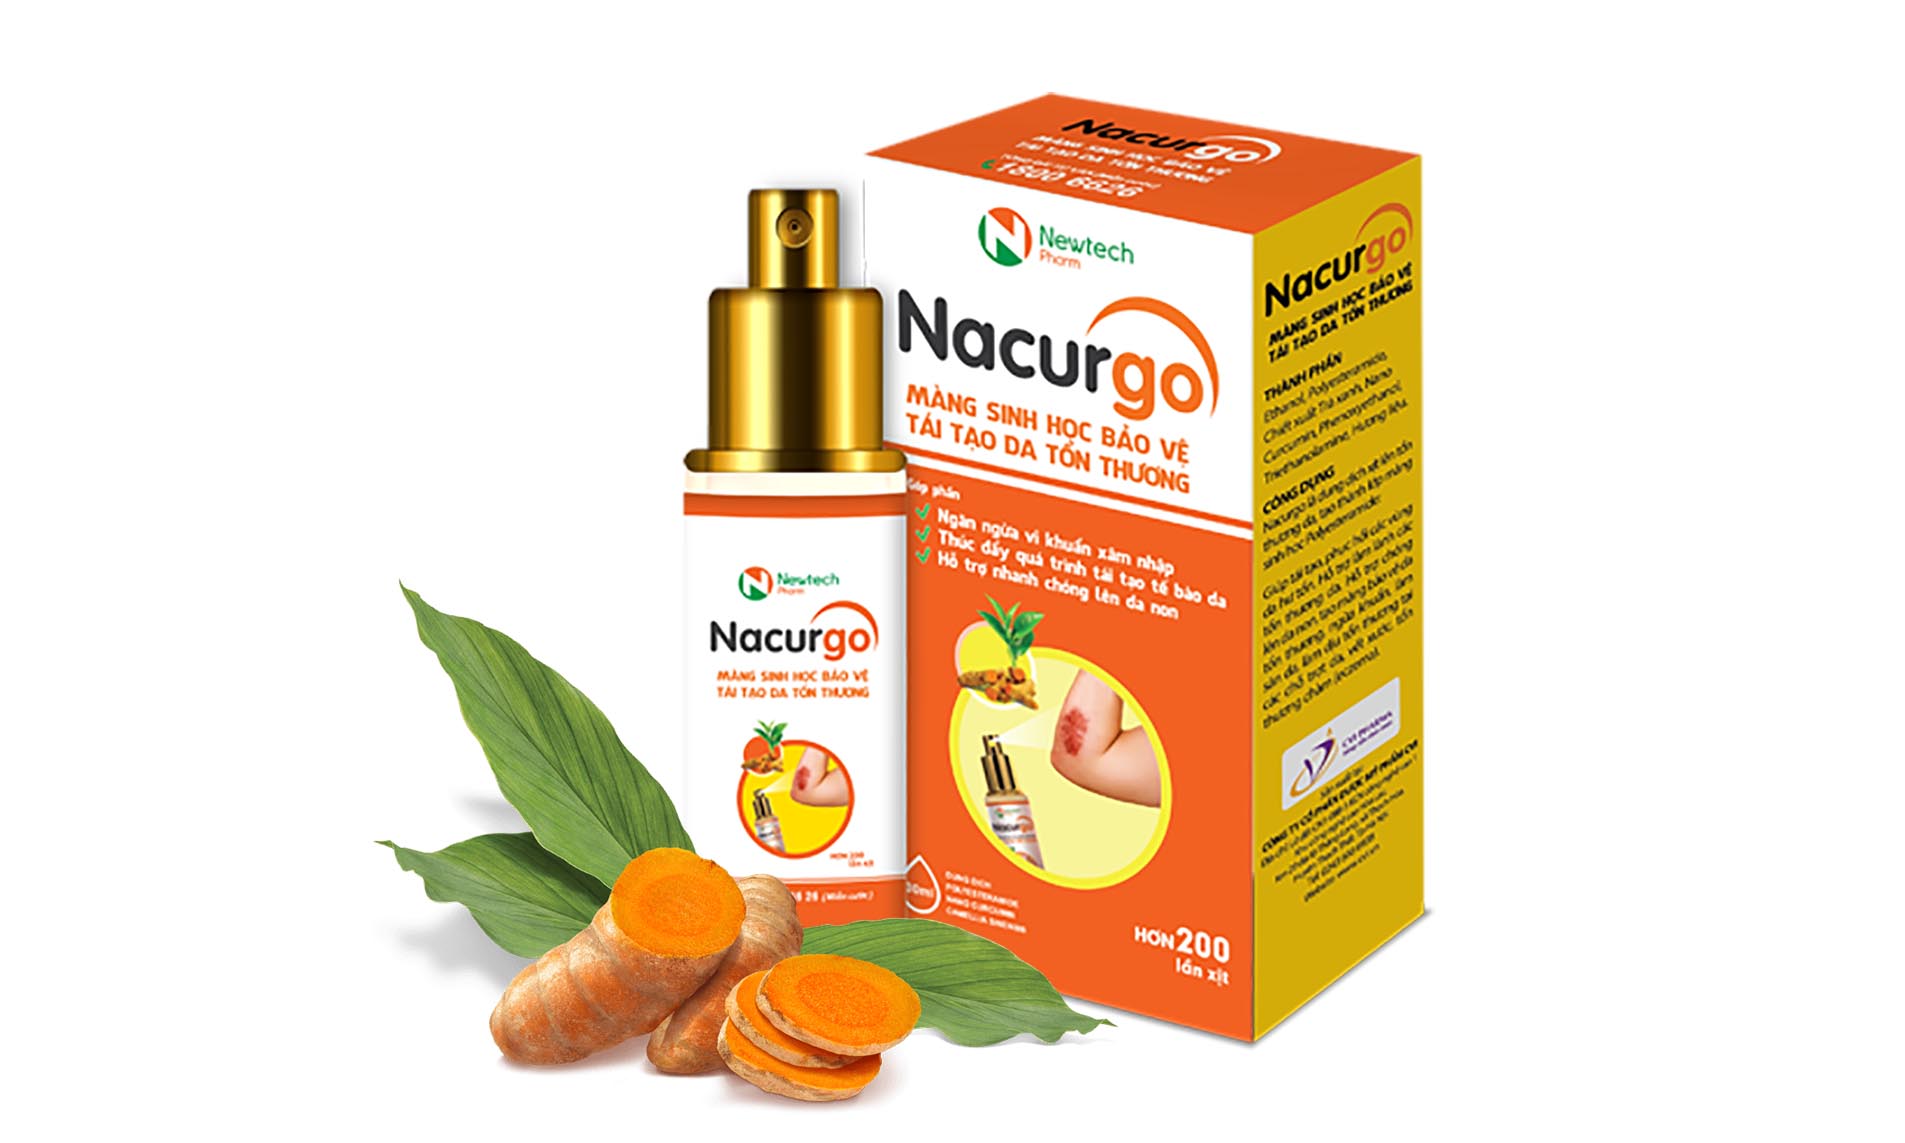 Nacurgo màng sinh học - bảo vệ vết thương ngăn ngừa nhiễm trùng! 1